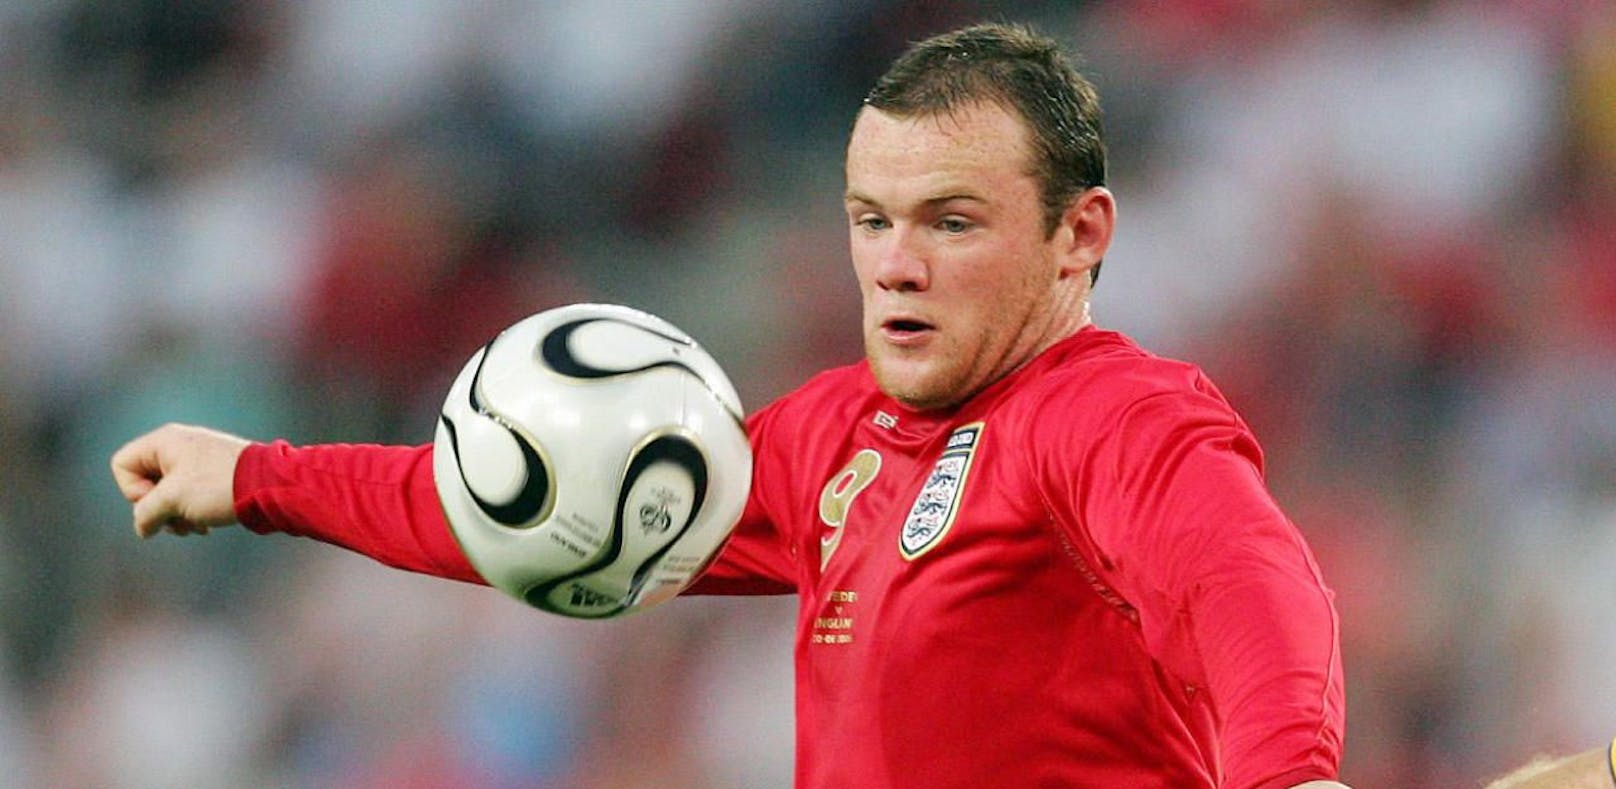 Rooney verrät schlimmste Aktion seiner Karriere